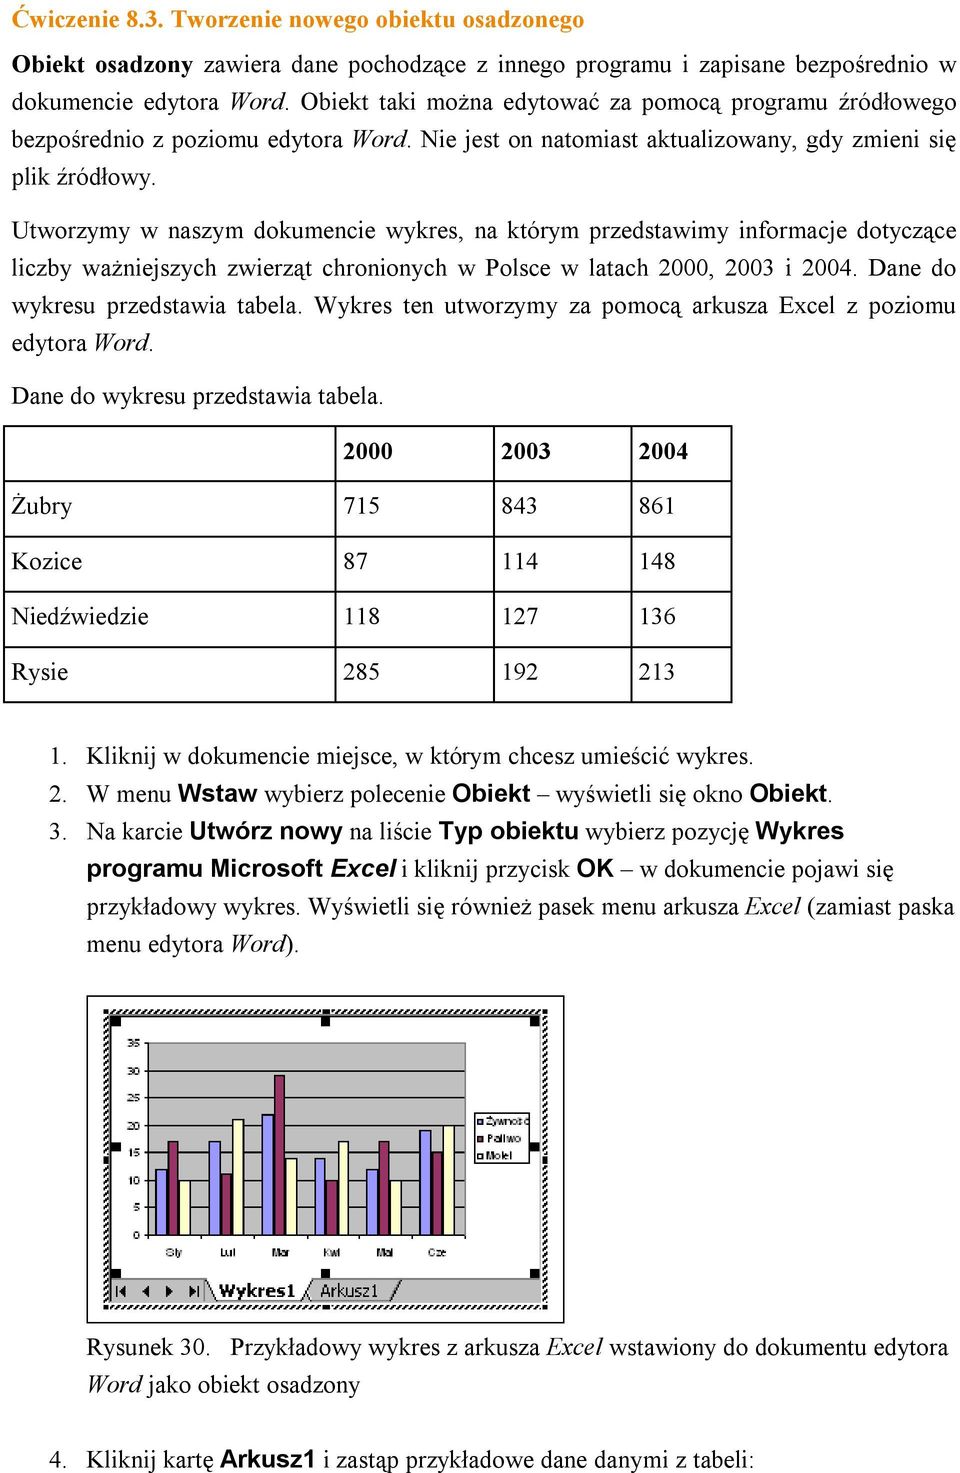 Utworzymy w naszym dokumencie wykres, na którym przedstawimy informacje dotyczące liczby ważniejszych zwierząt chronionych w Polsce w latach 2000, 2003 i 2004. Dane do wykresu przedstawia tabela.